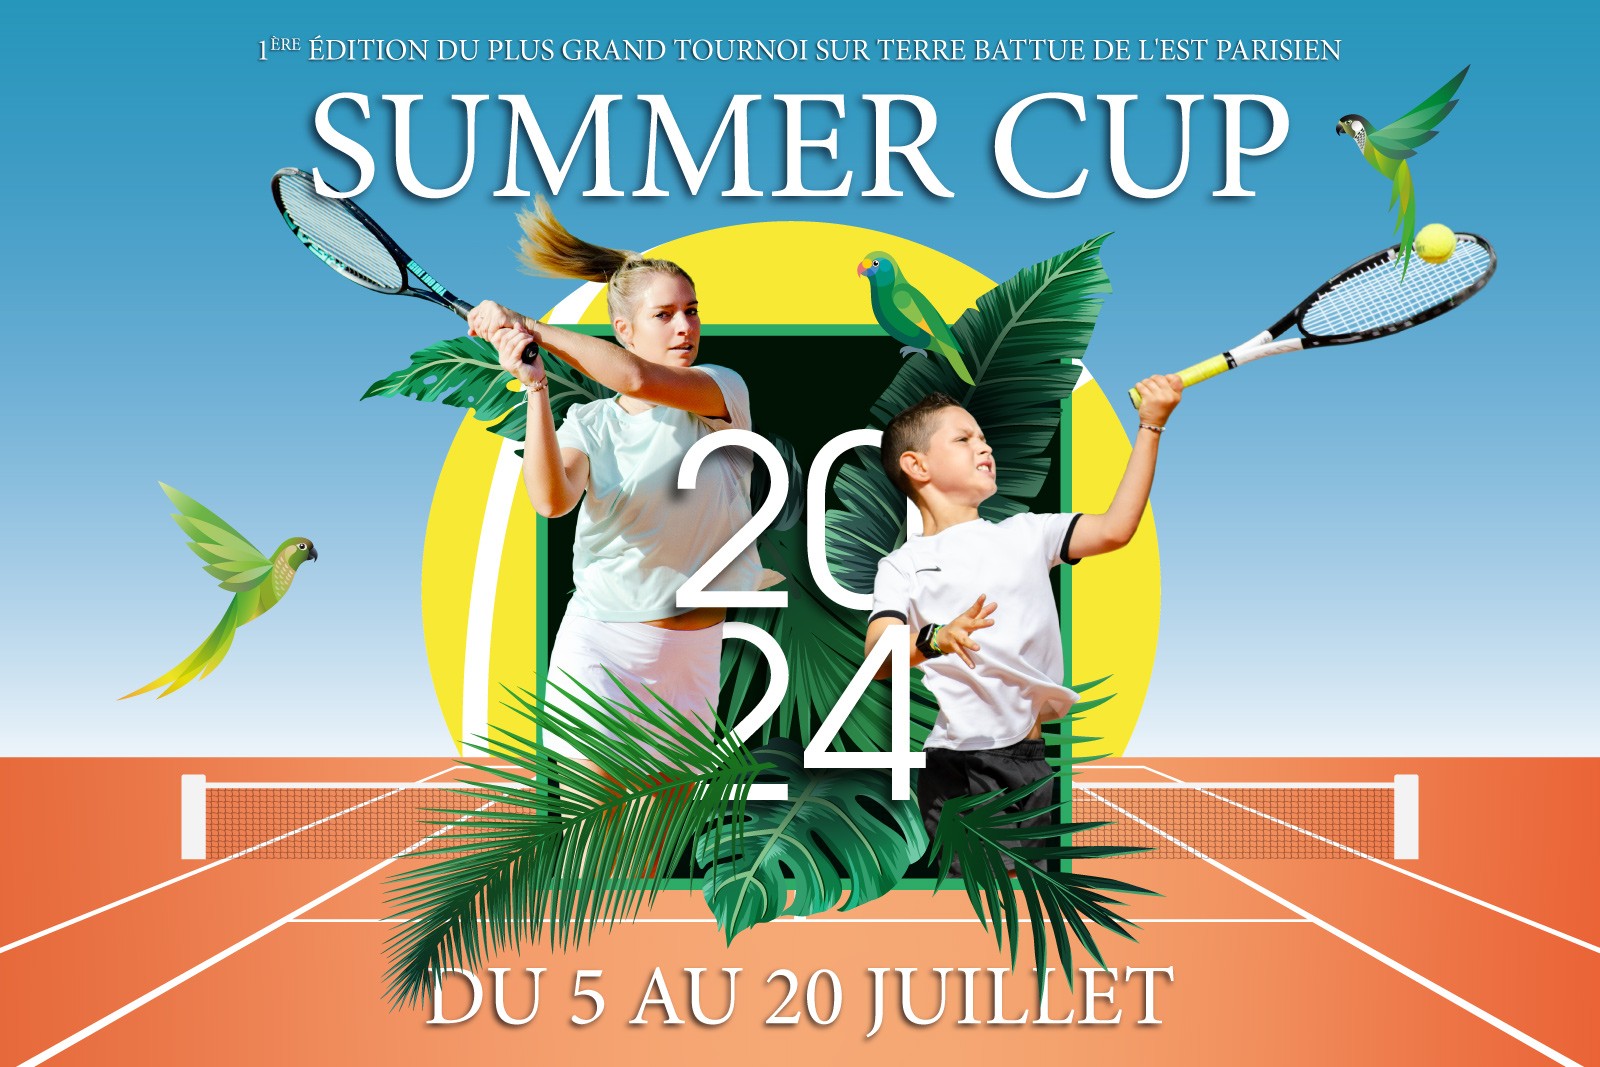 SUMMER CUP - du 5 au 20 juillet